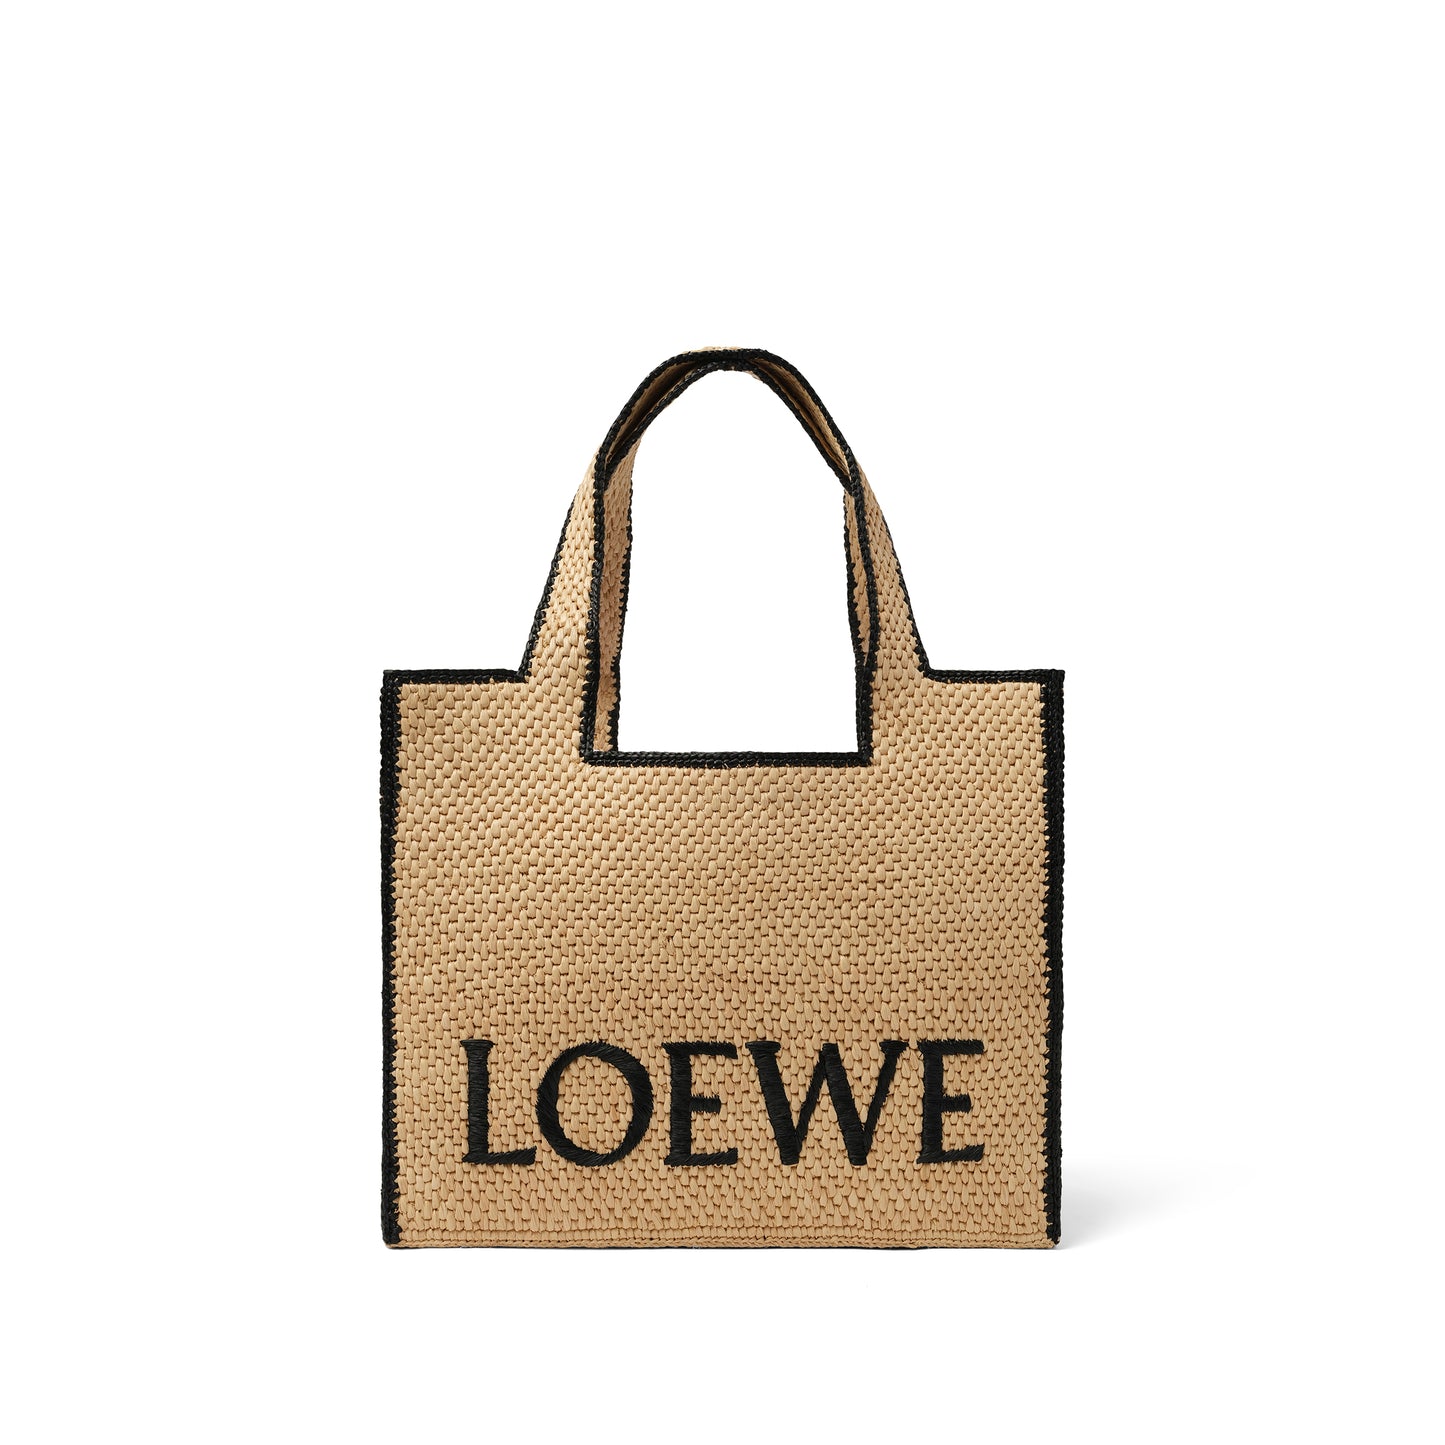 Loewe Font Tote Large Bag in Natural